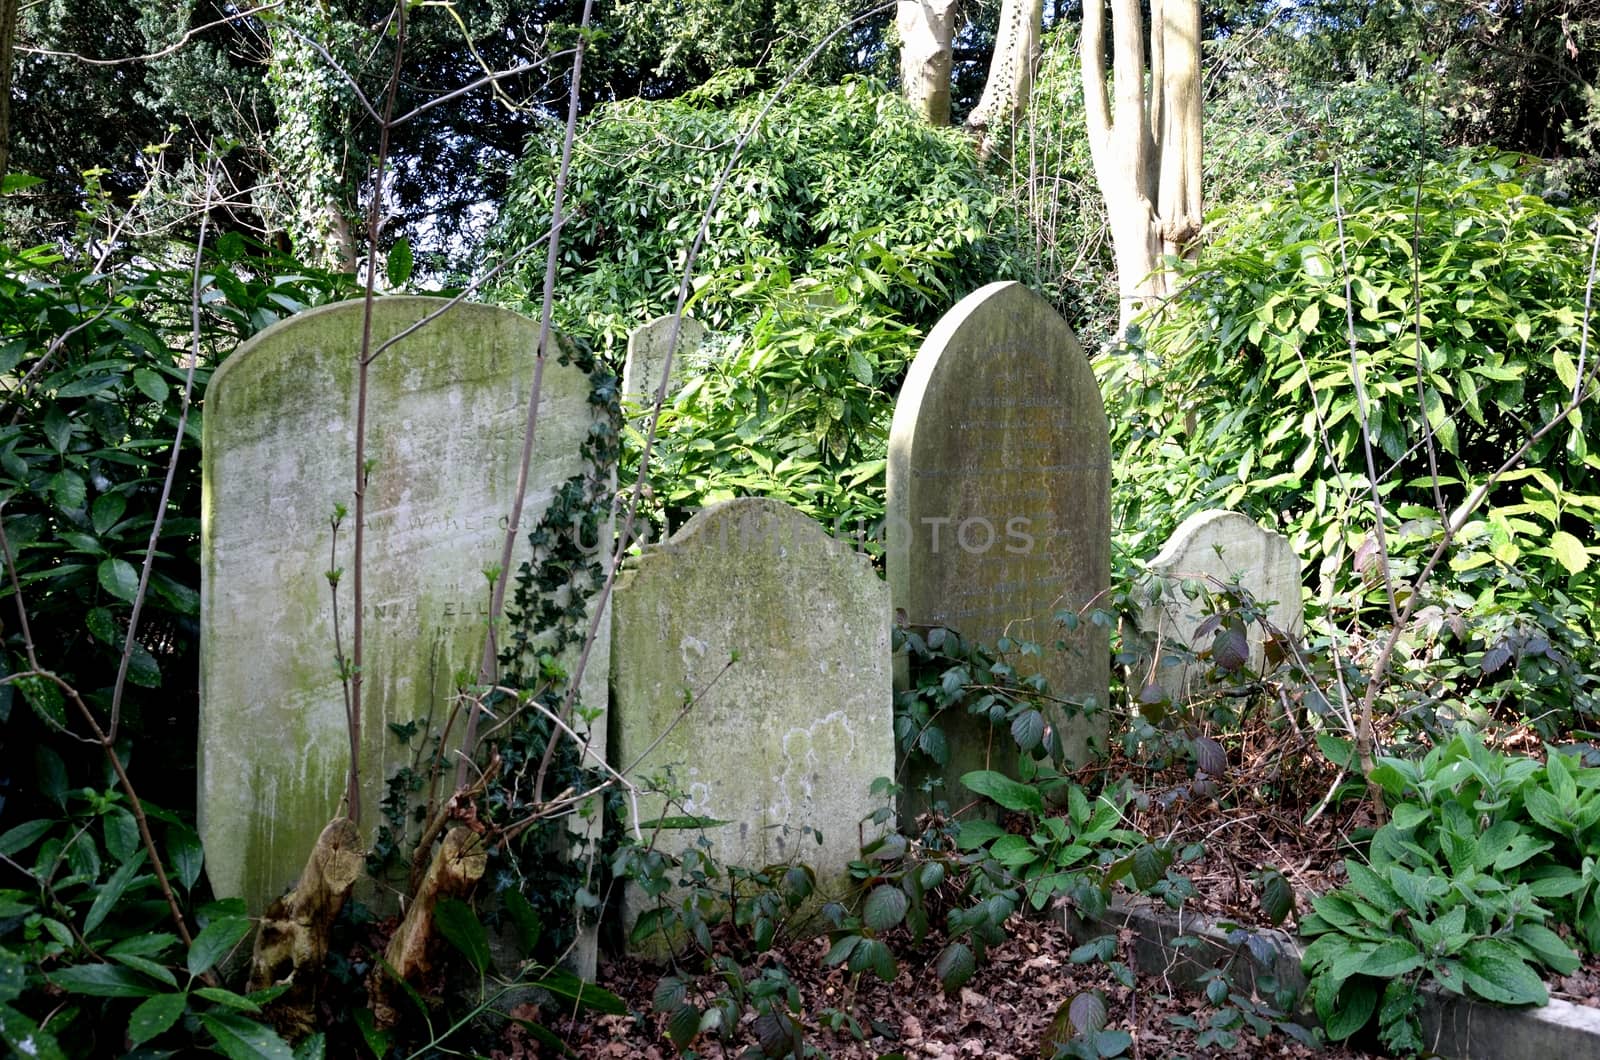 Trree Gravestones in graveyard by pauws99